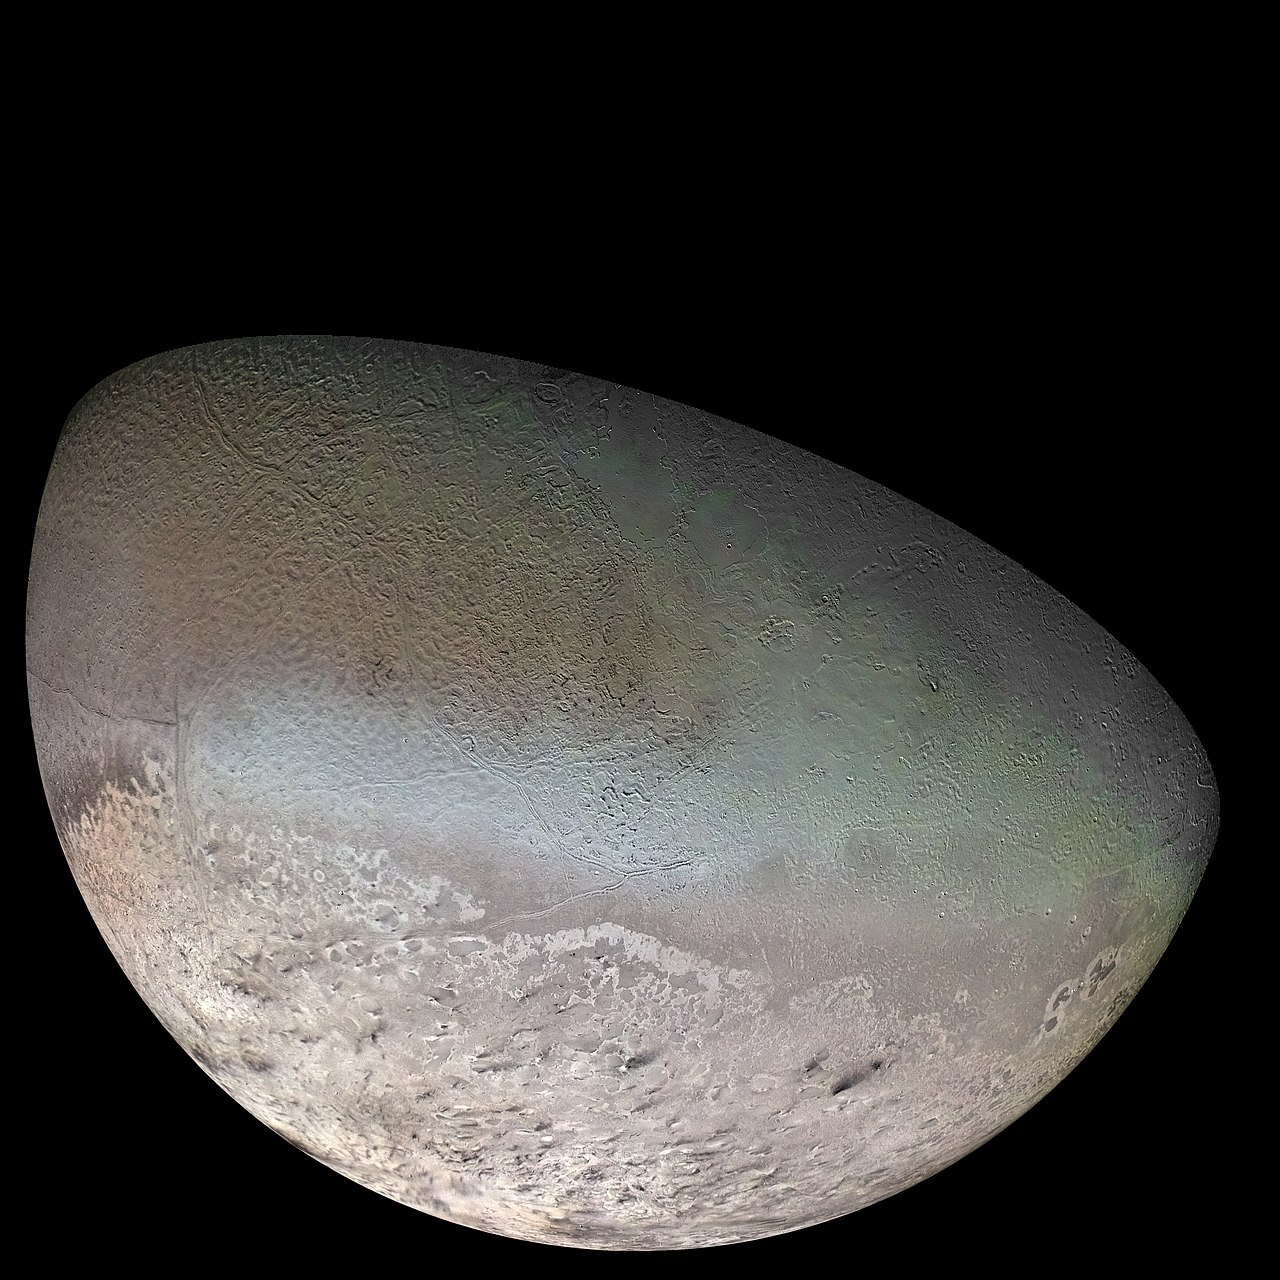 1280px-Triton_moon_mosaic_Voyager_2_(large)